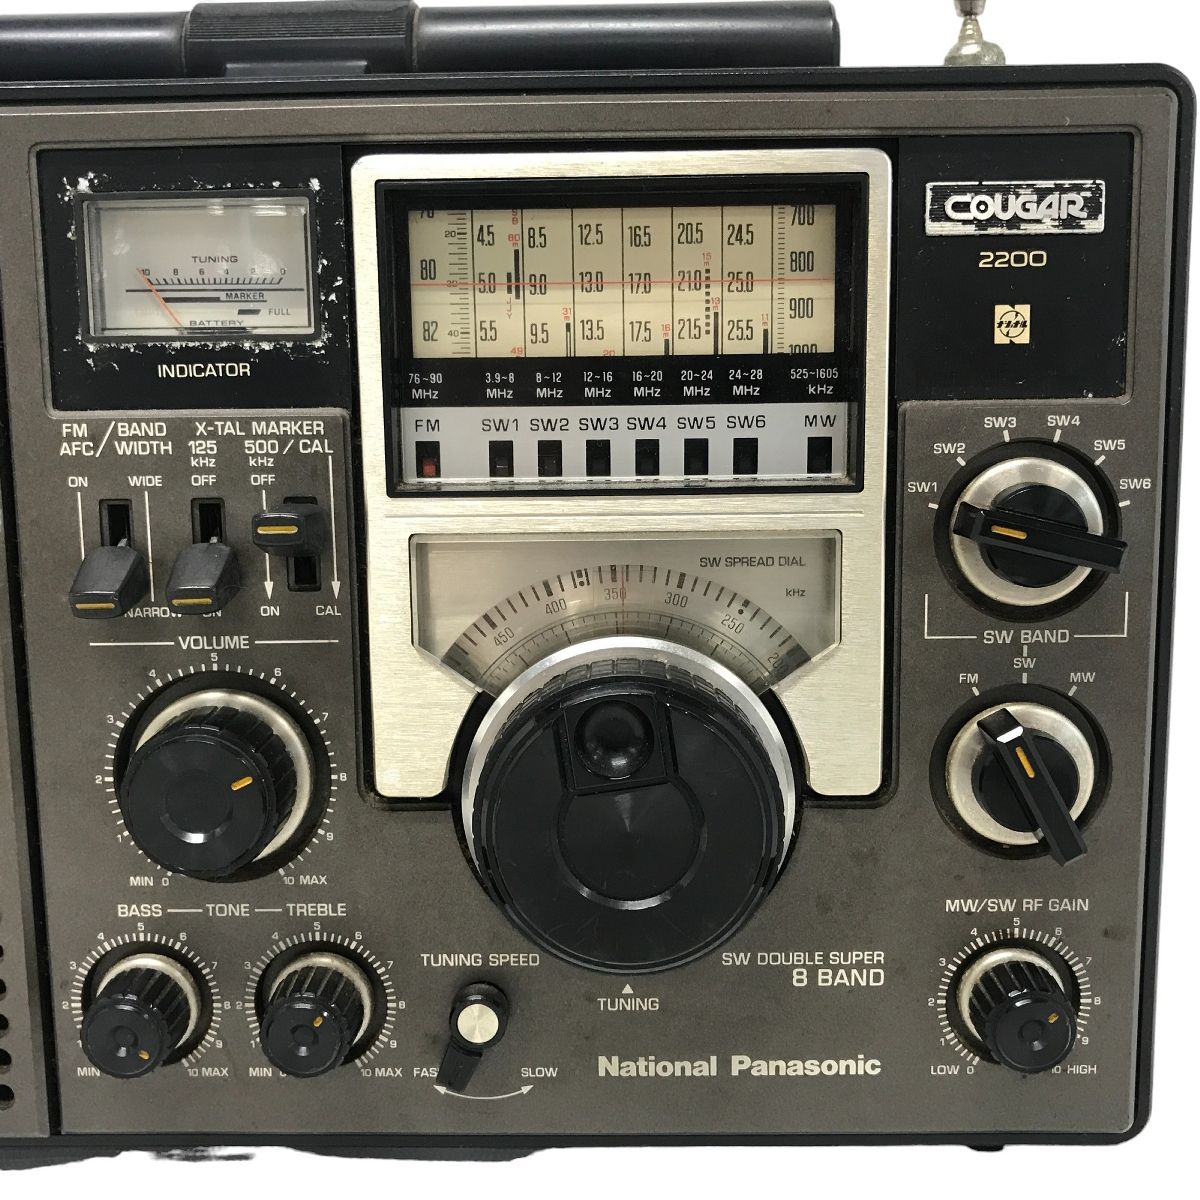 National Panasonic COUGAR 2200 RF-2200 ラジオ マルチバンド レシーバー BCL 短波ラジオ ナショナル  F8914627 - メルカリ